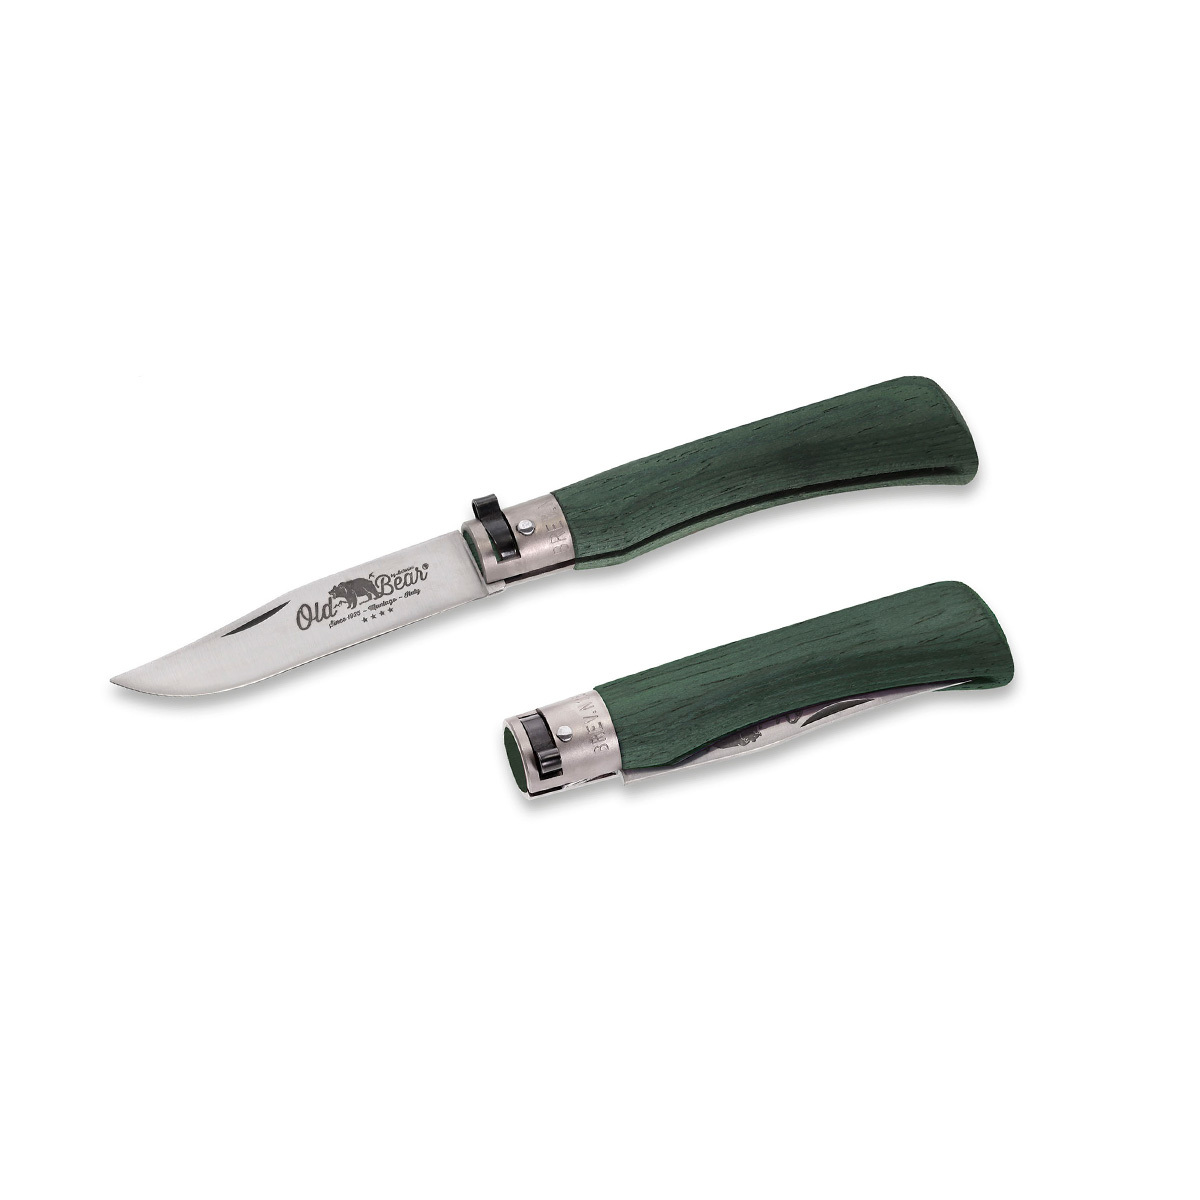 Складной нож Antonini Old Bear® Full Color XL, сталь 420, рукоять зеленая стабилизированная древесина - фото 2